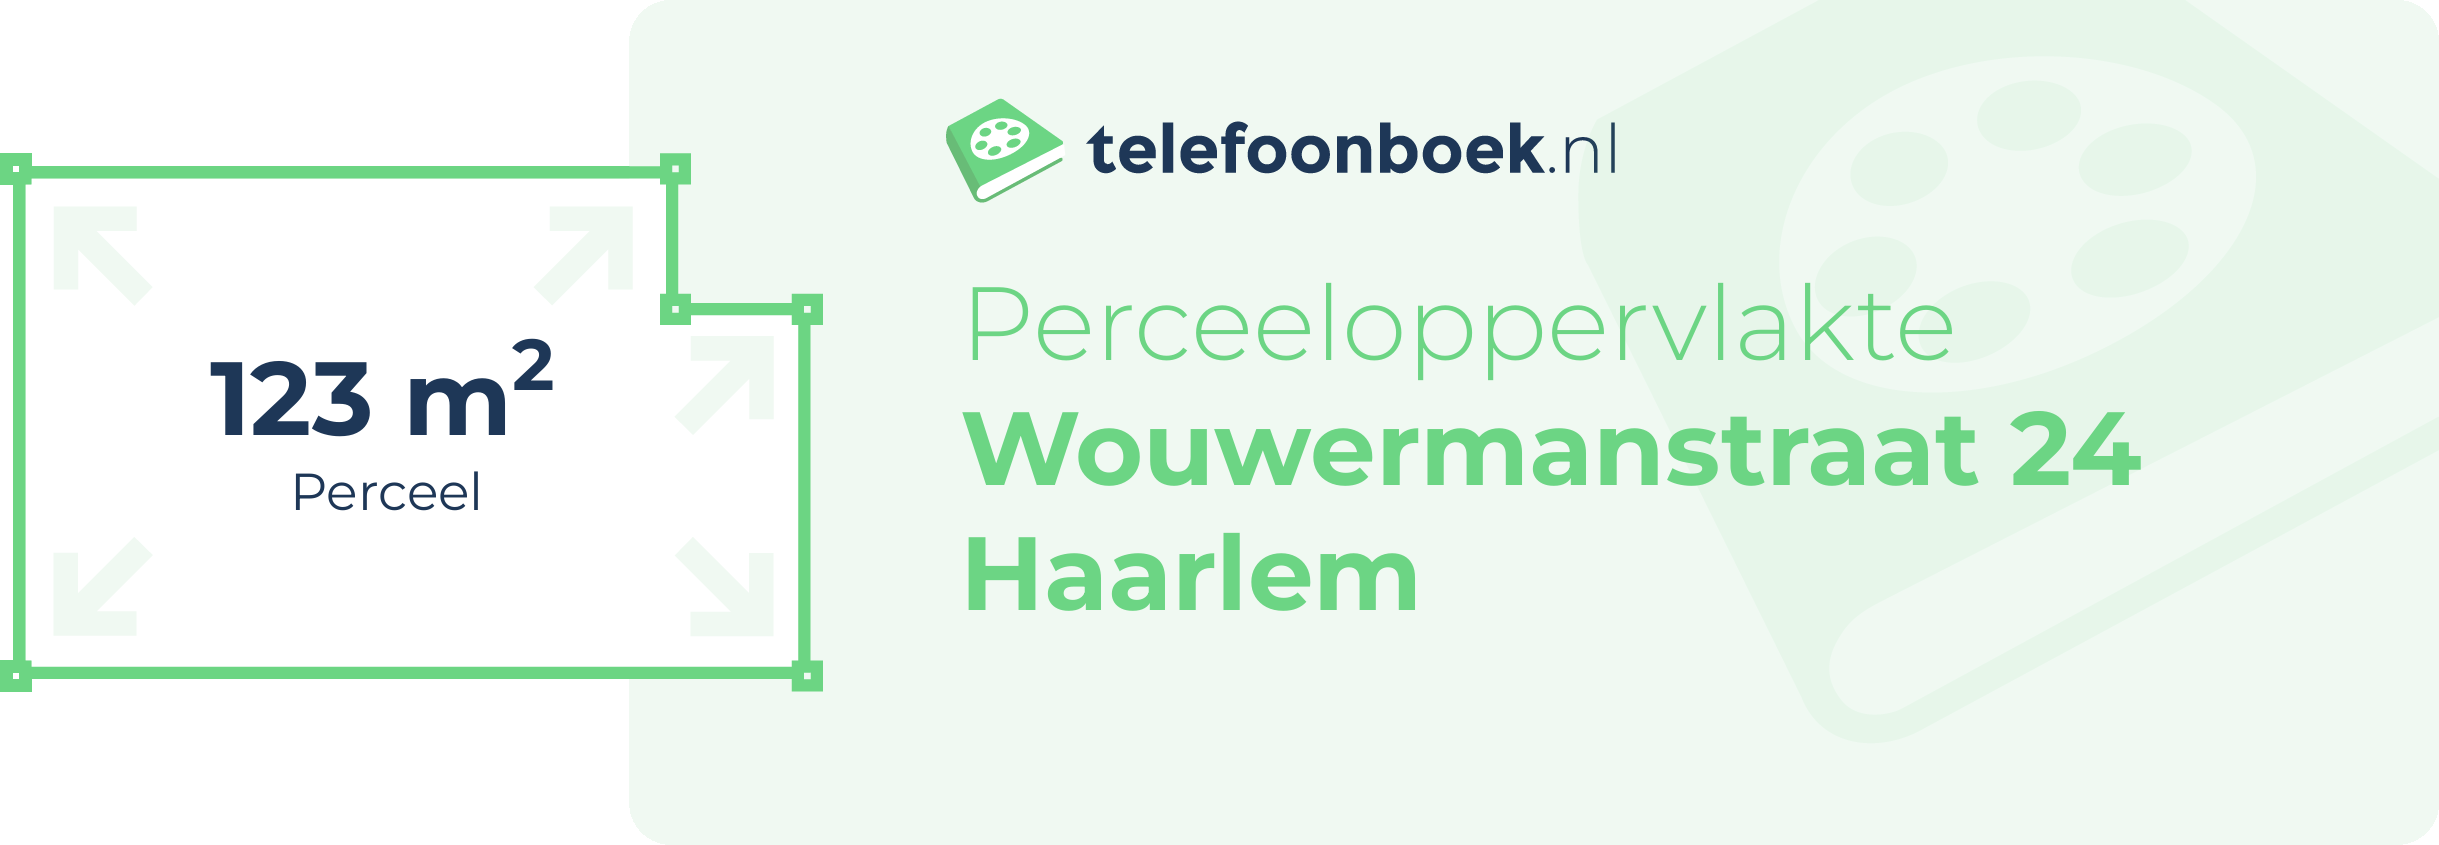 Perceeloppervlakte Wouwermanstraat 24 Haarlem